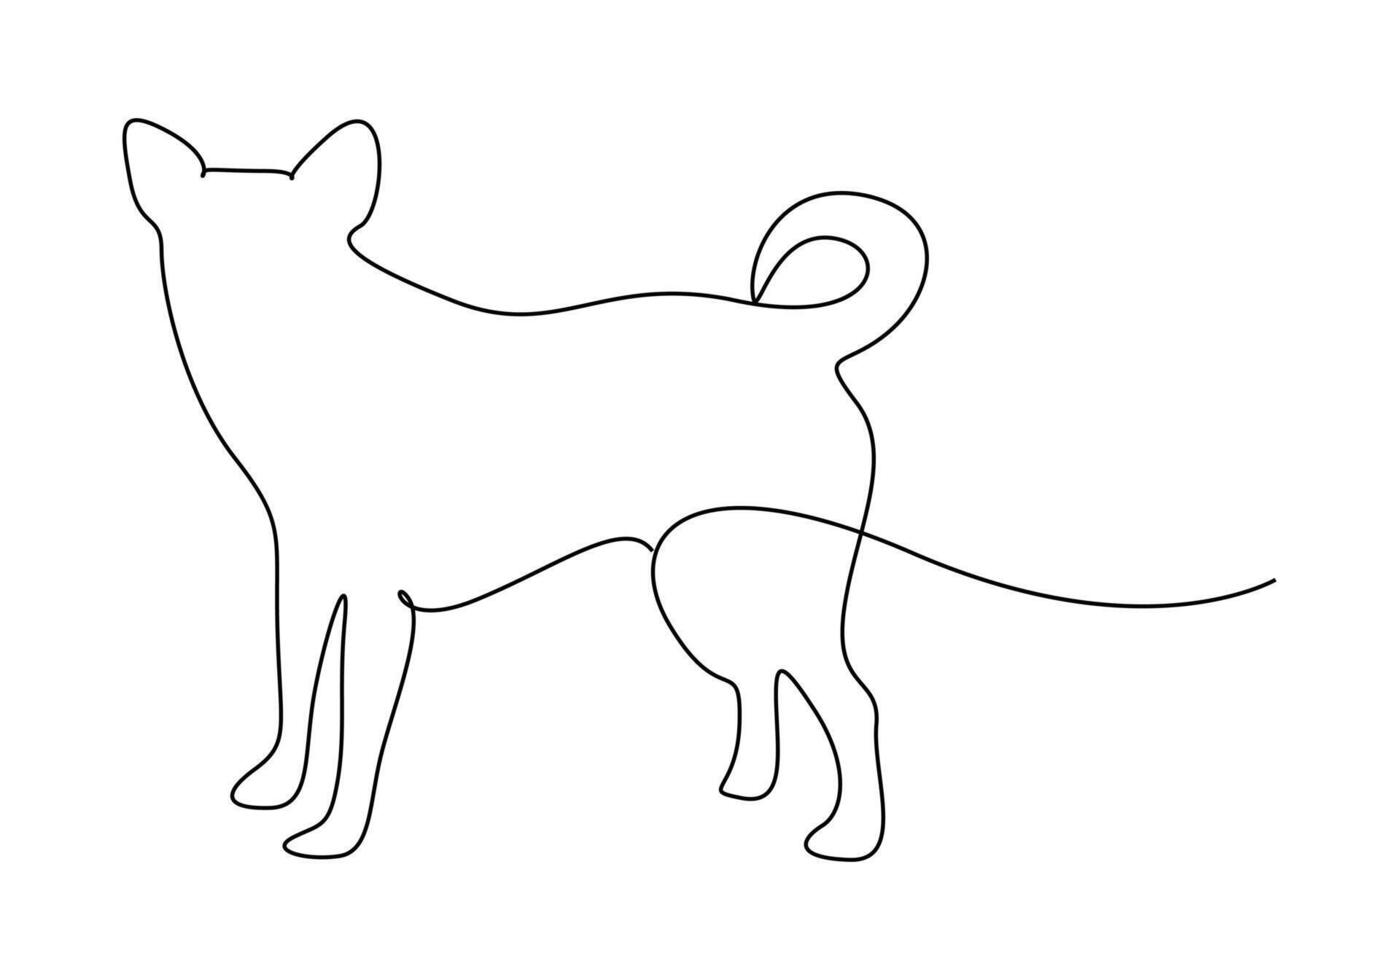 doorlopend single lijn tekening van hond premie illustratie vector